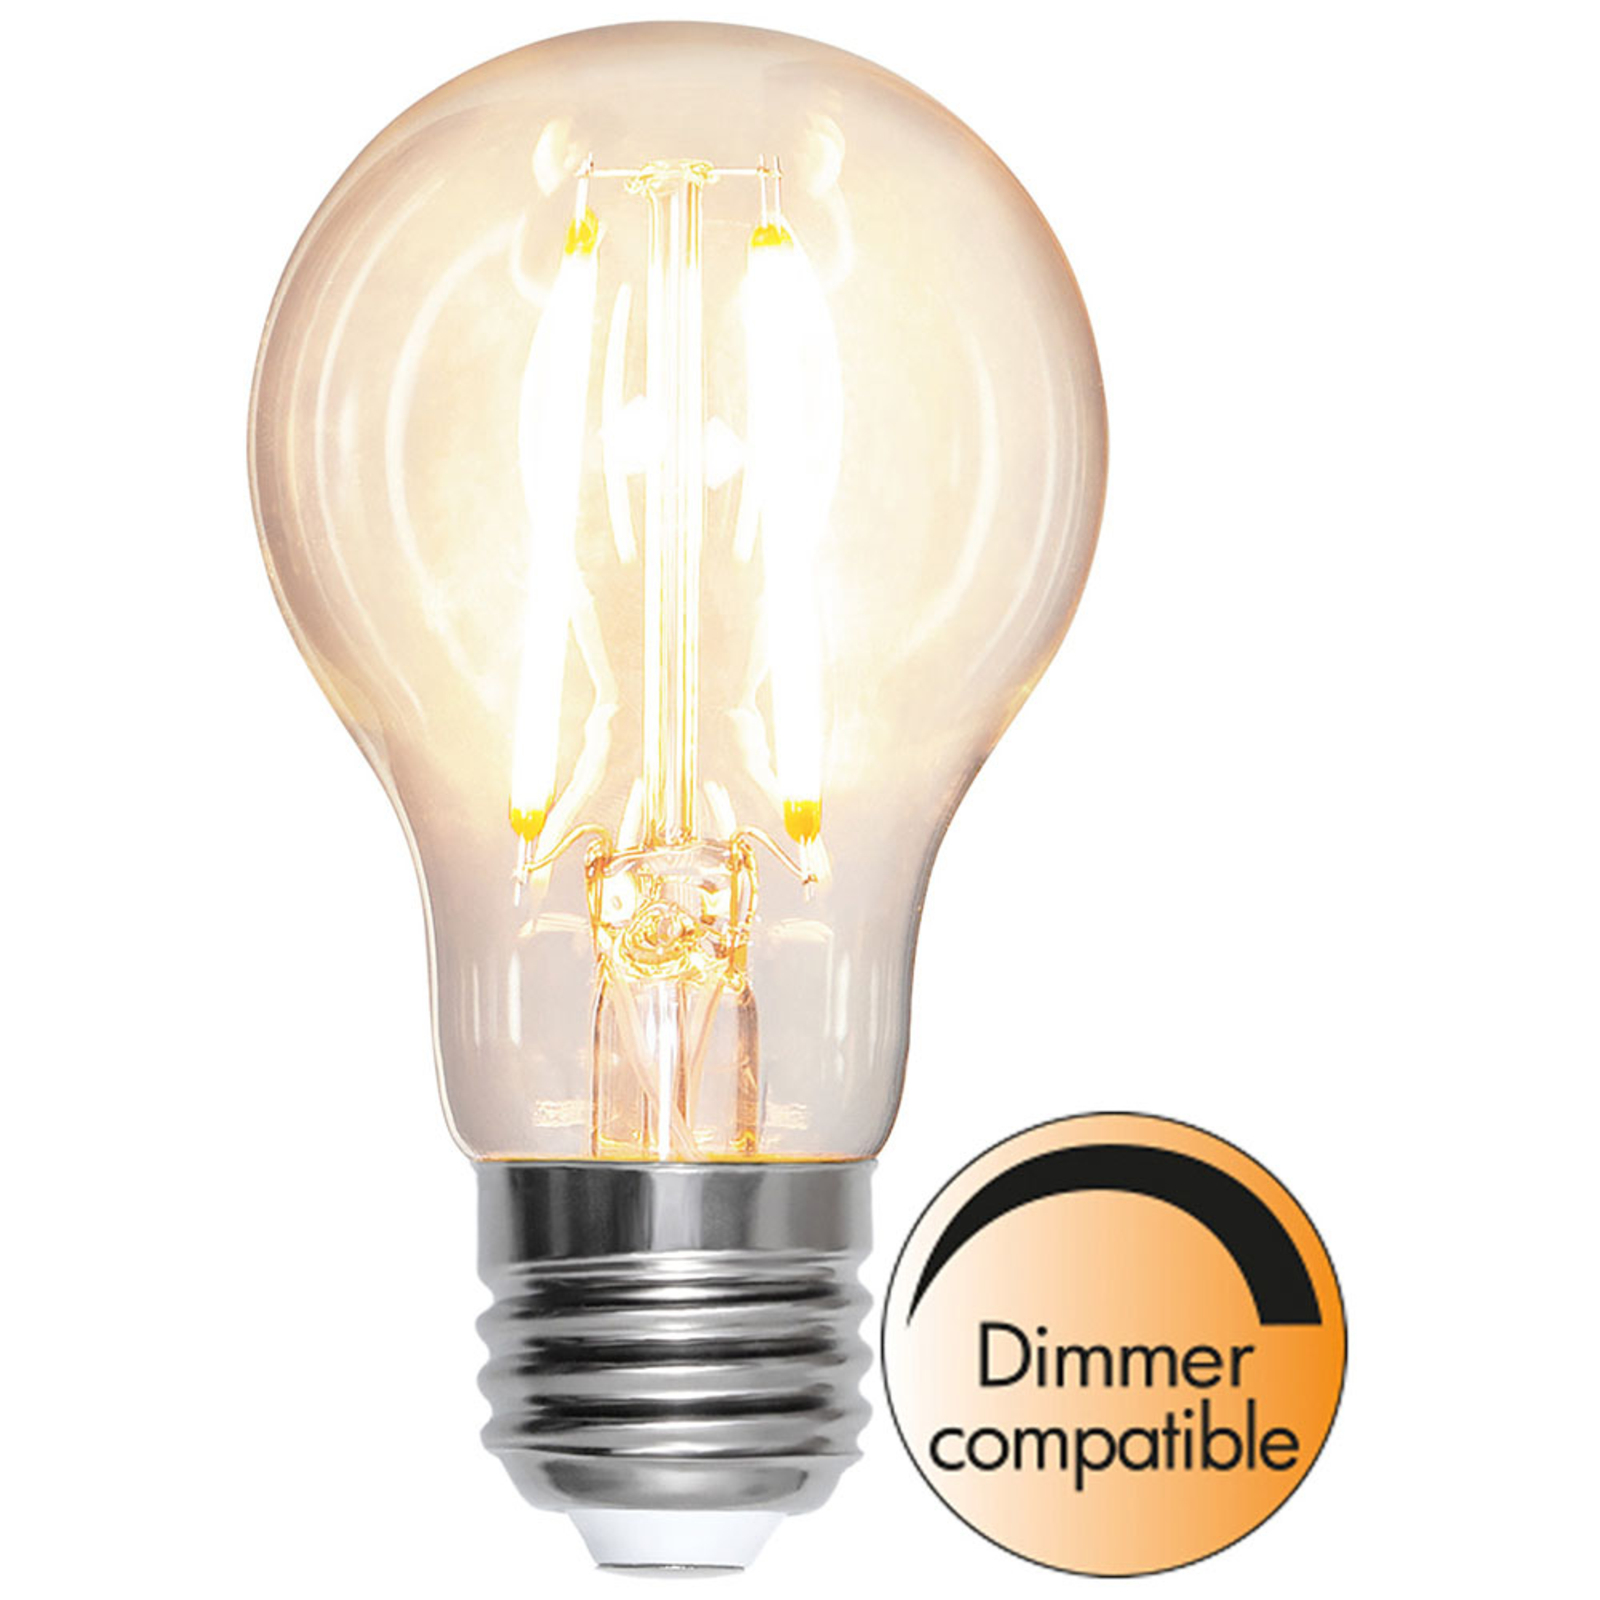 Aantrekkingskracht De andere dag verdrievoudigen LED lamp E27 8W 2.700K filament 1.000lm dimbaar | Lampen24.nl